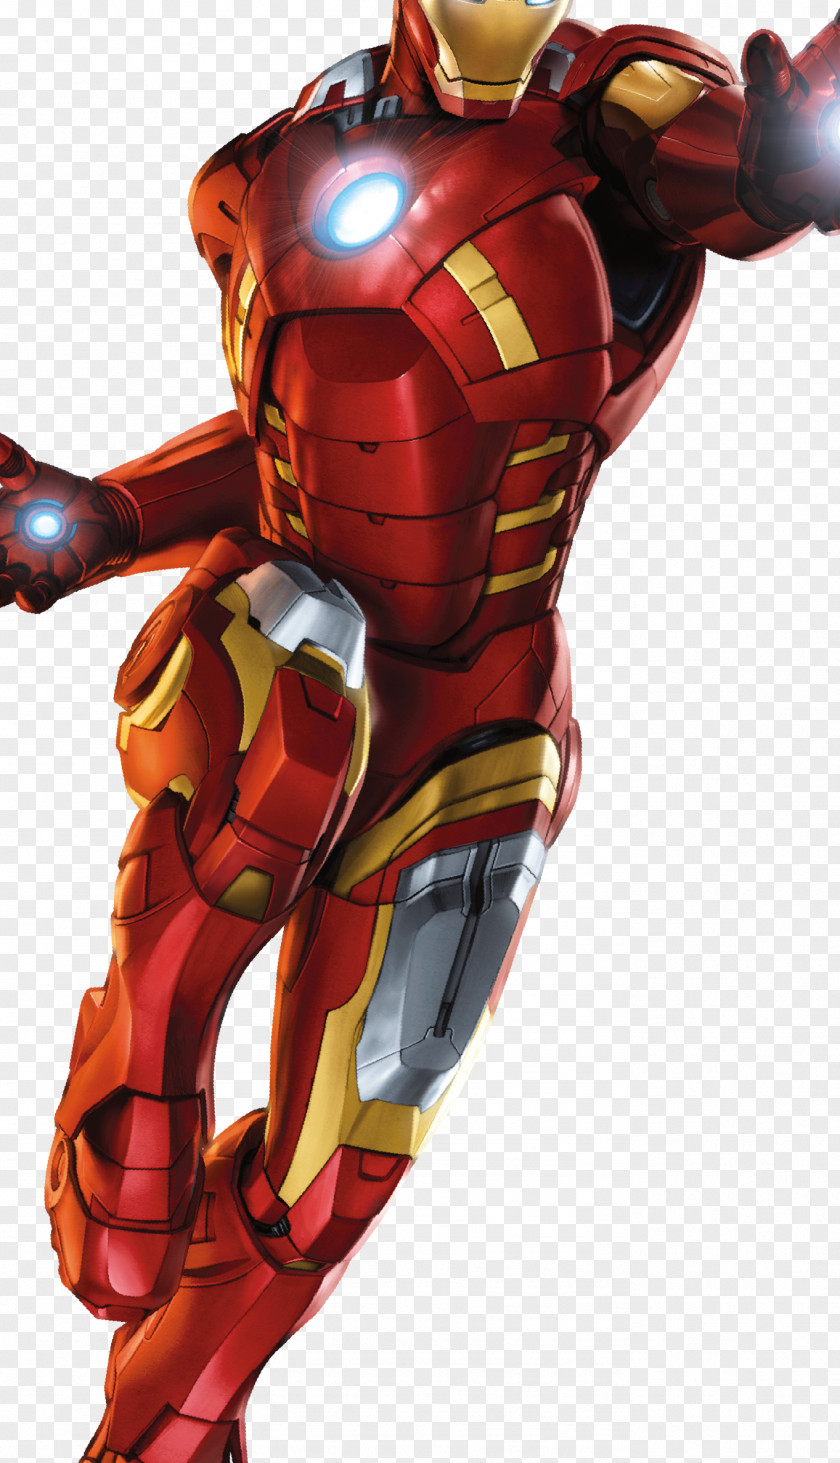 Robert Downey Jr Hulk Iron Man Jigsaw Puzzles Superhero Action & Toy Figures PNG